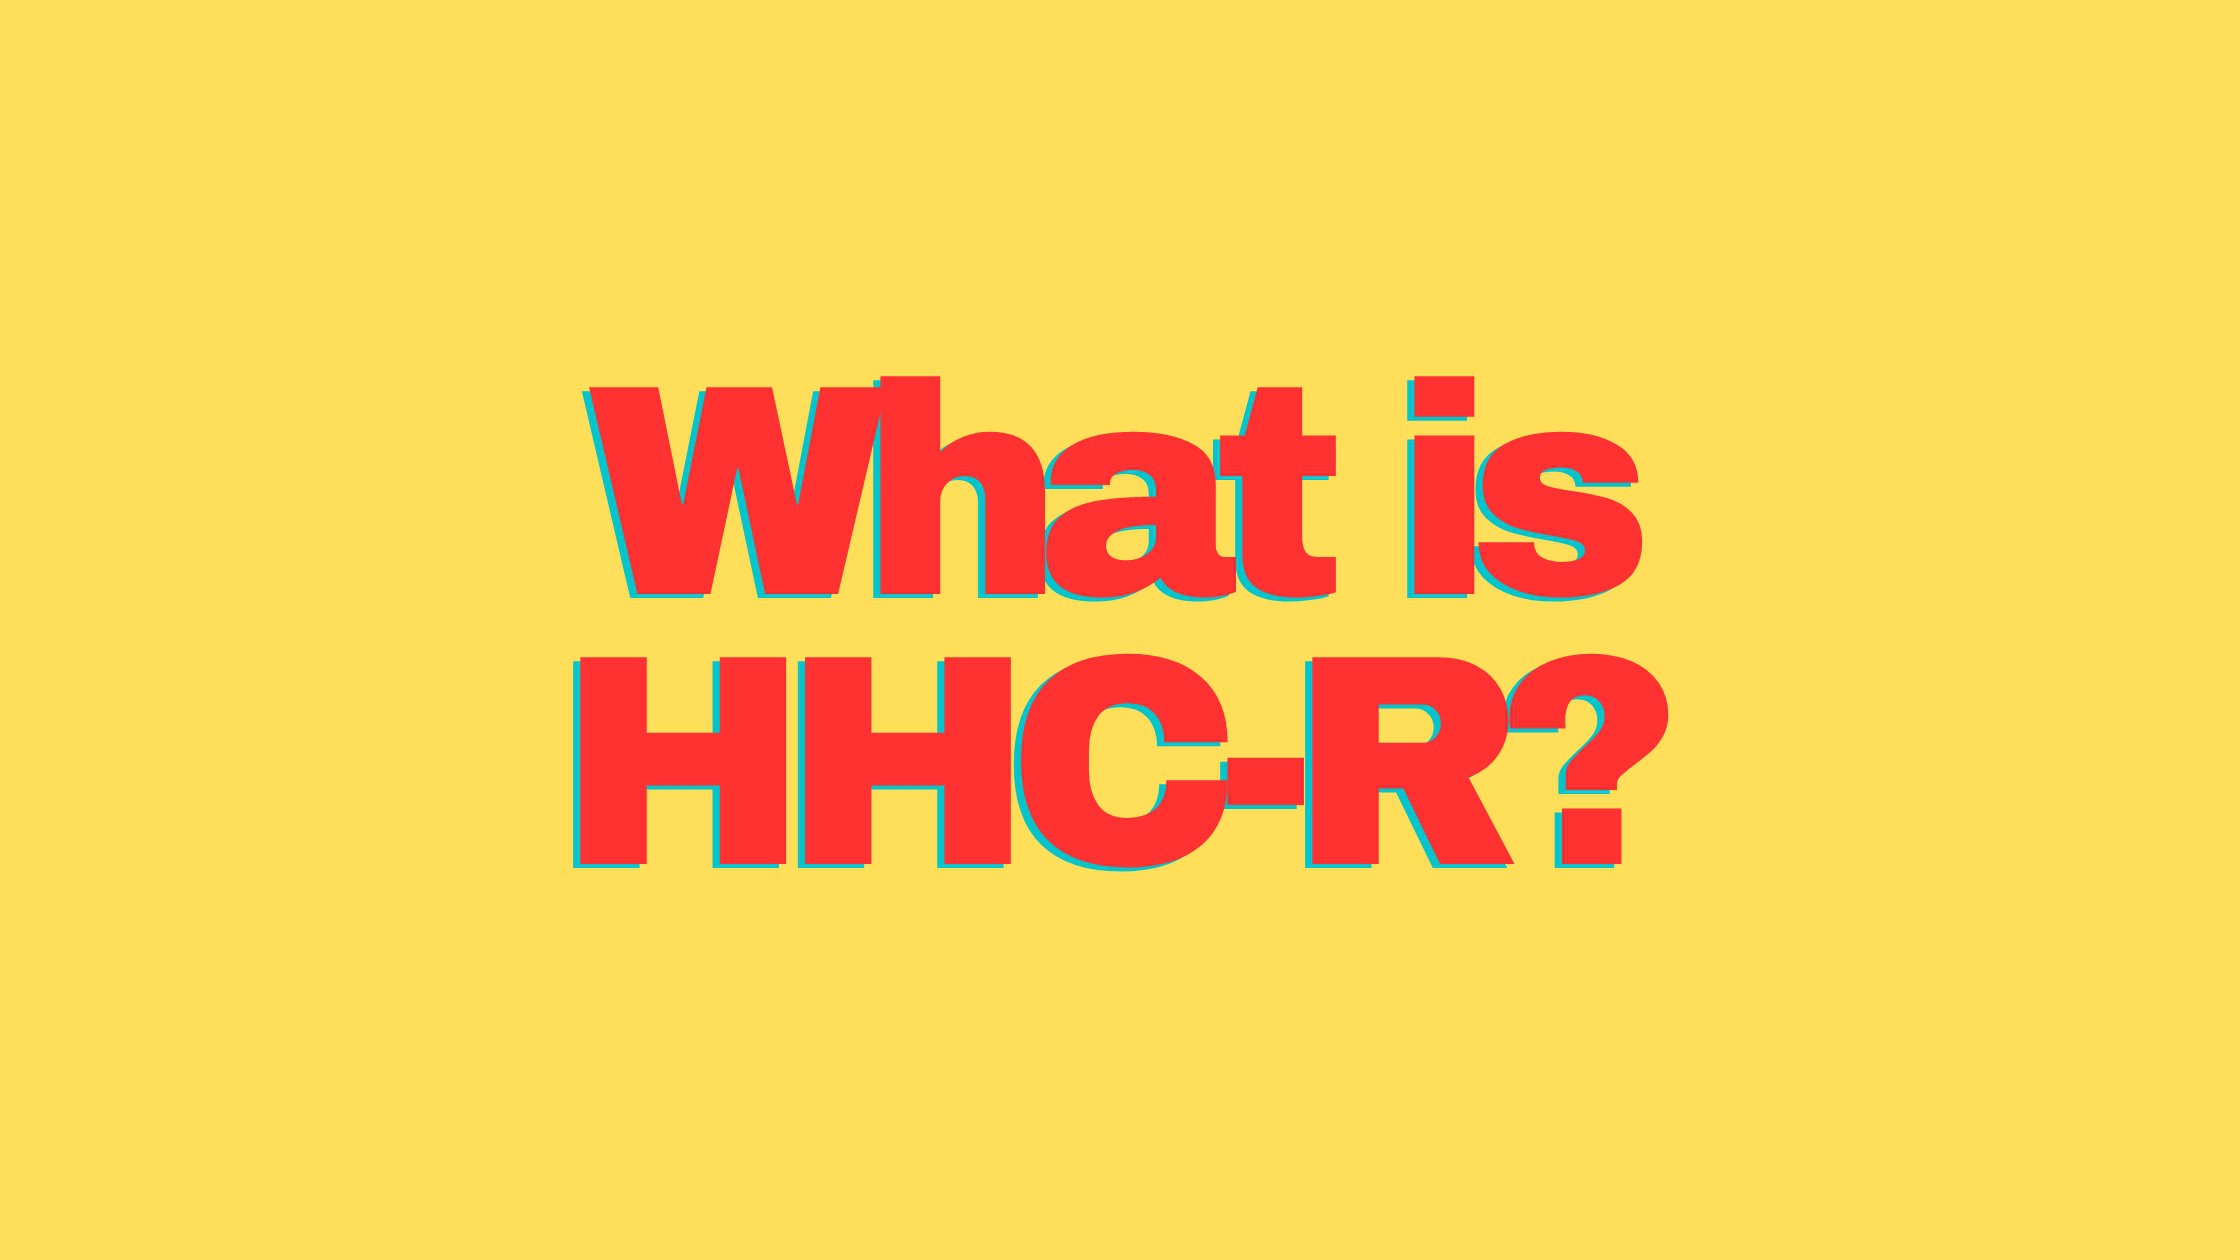 HHC-R